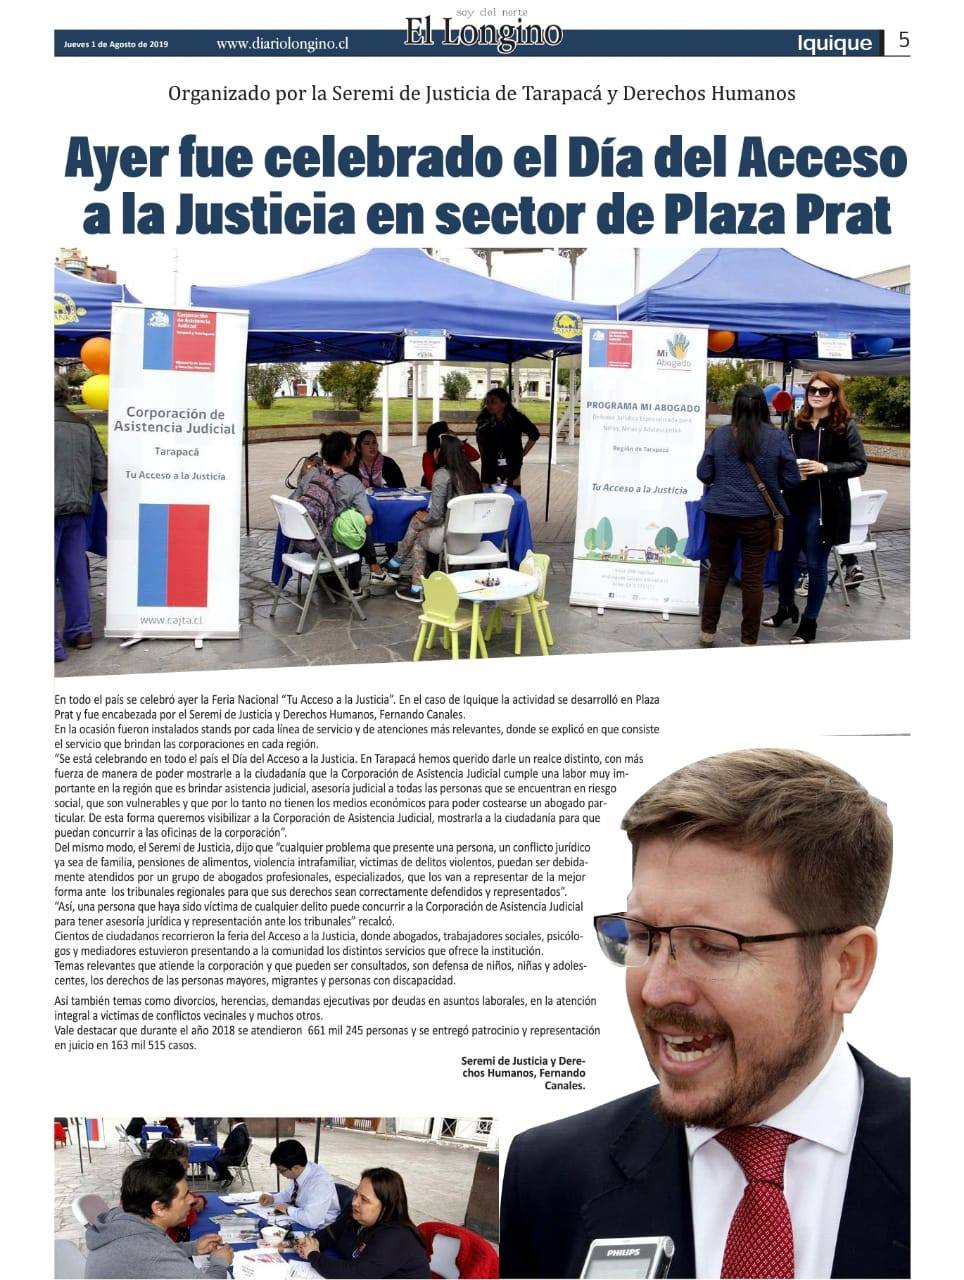 En el diario El Longino de Iquique se informa sobre la Primera Feria Nacional de las CAJ, "Tu acceso a la Justicia"